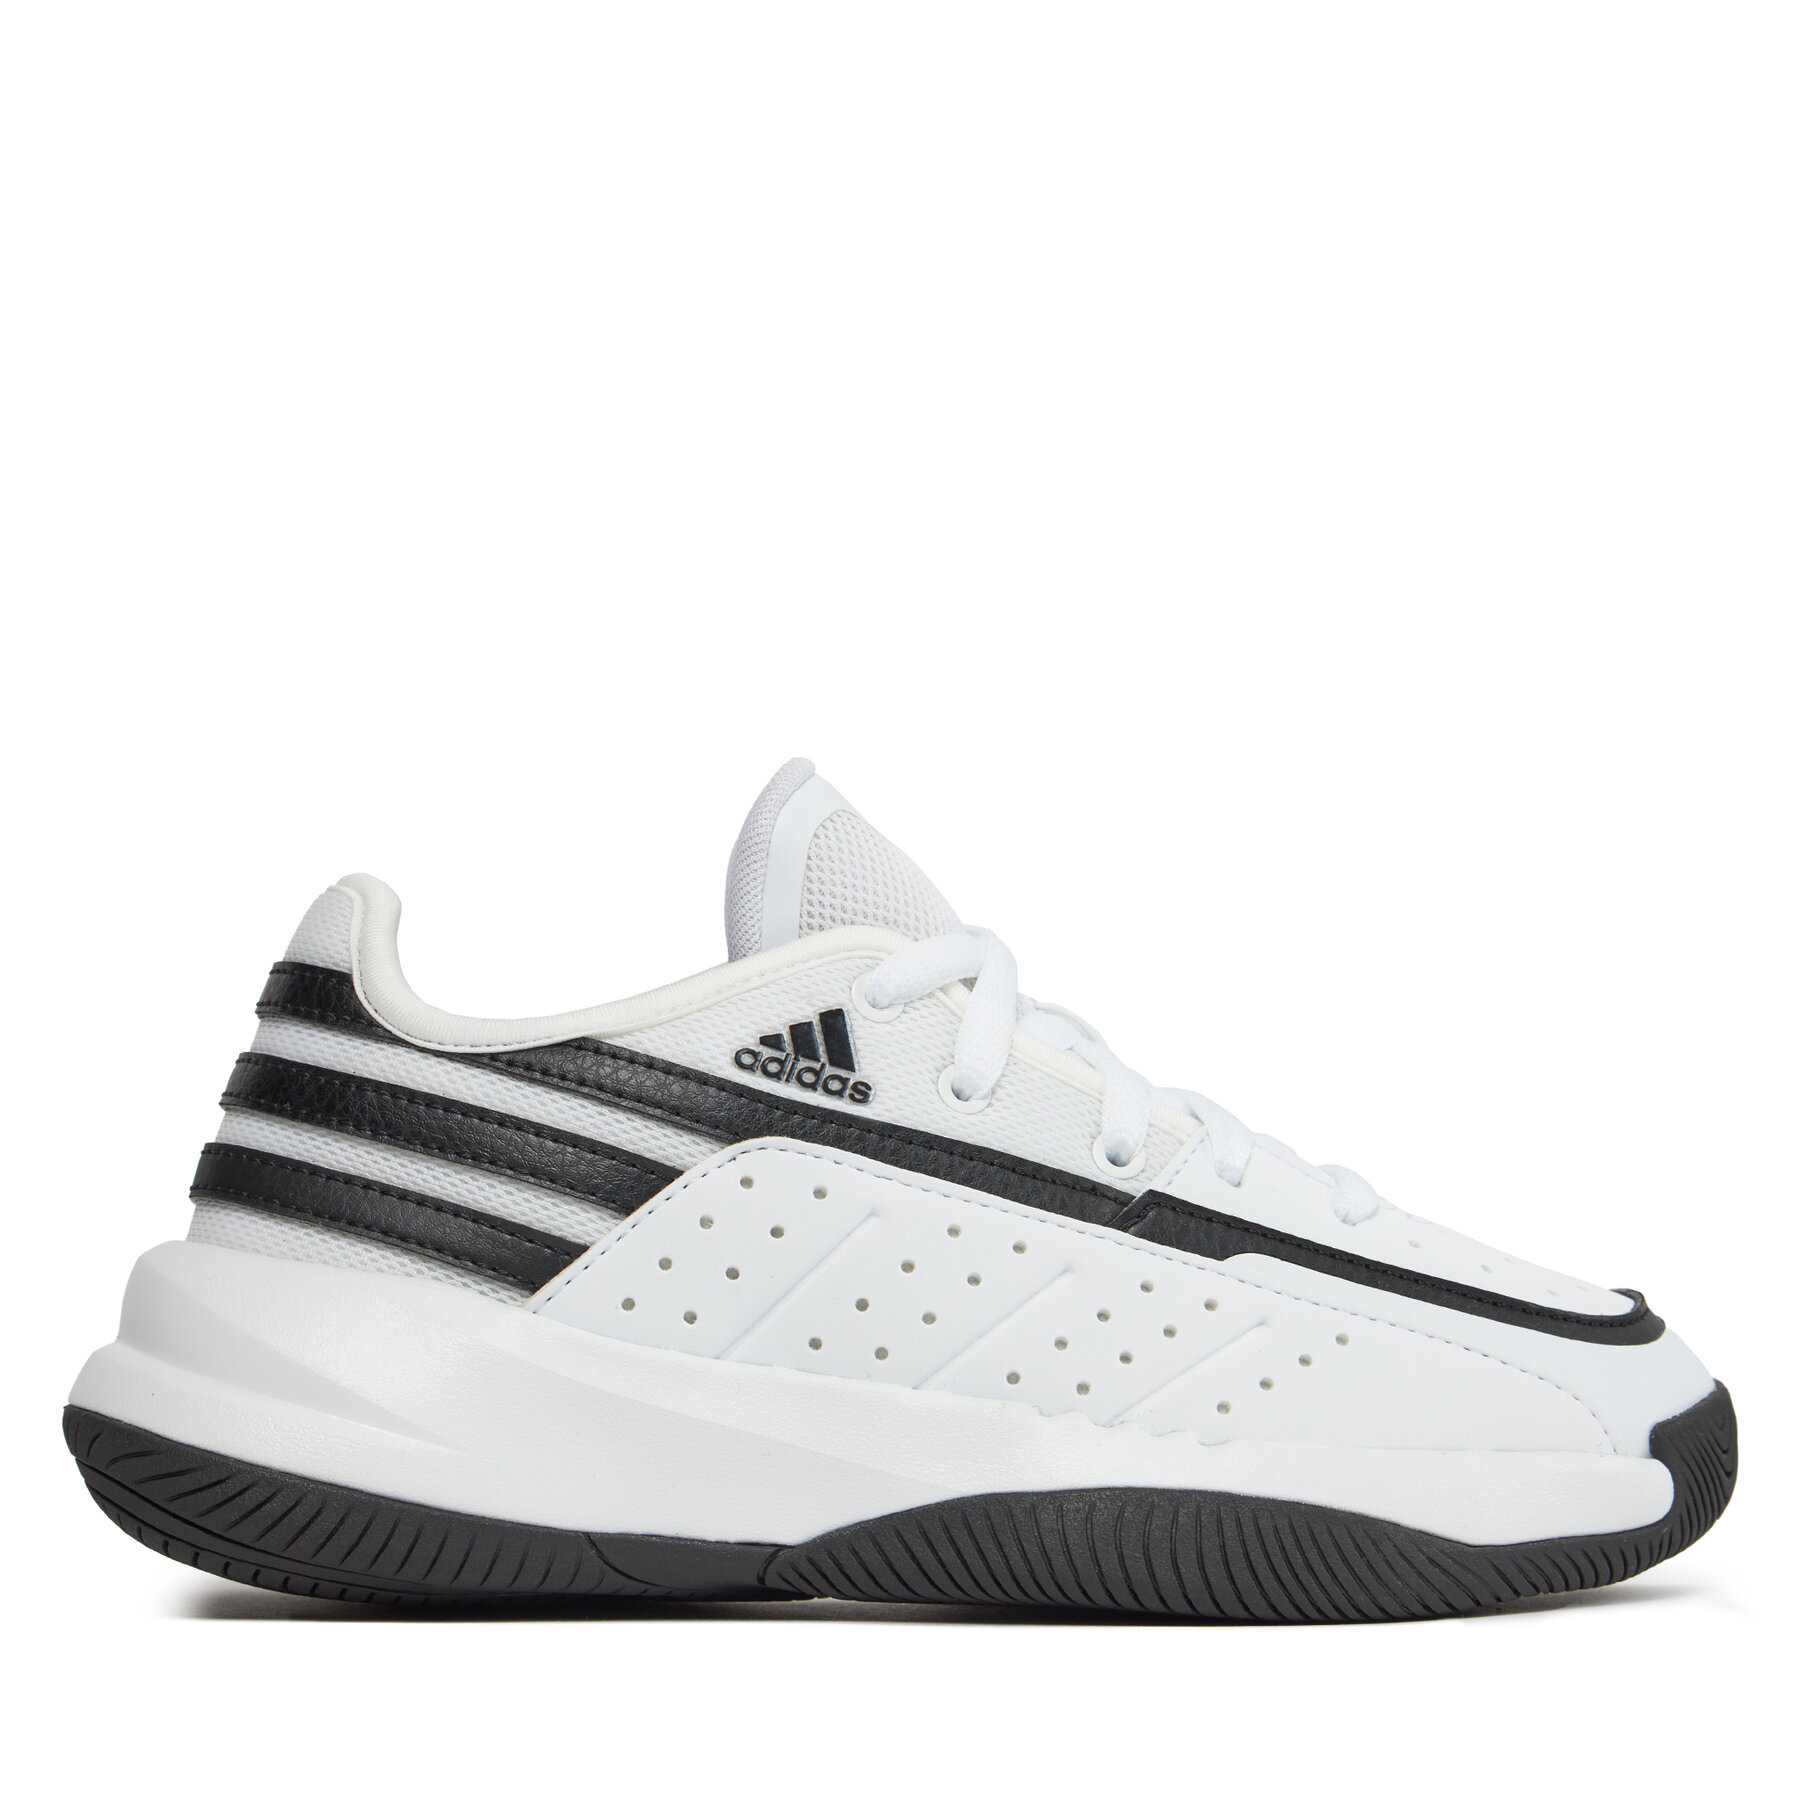 Comprar en oferta Adidas Basketball shoe black-white 79783822-42